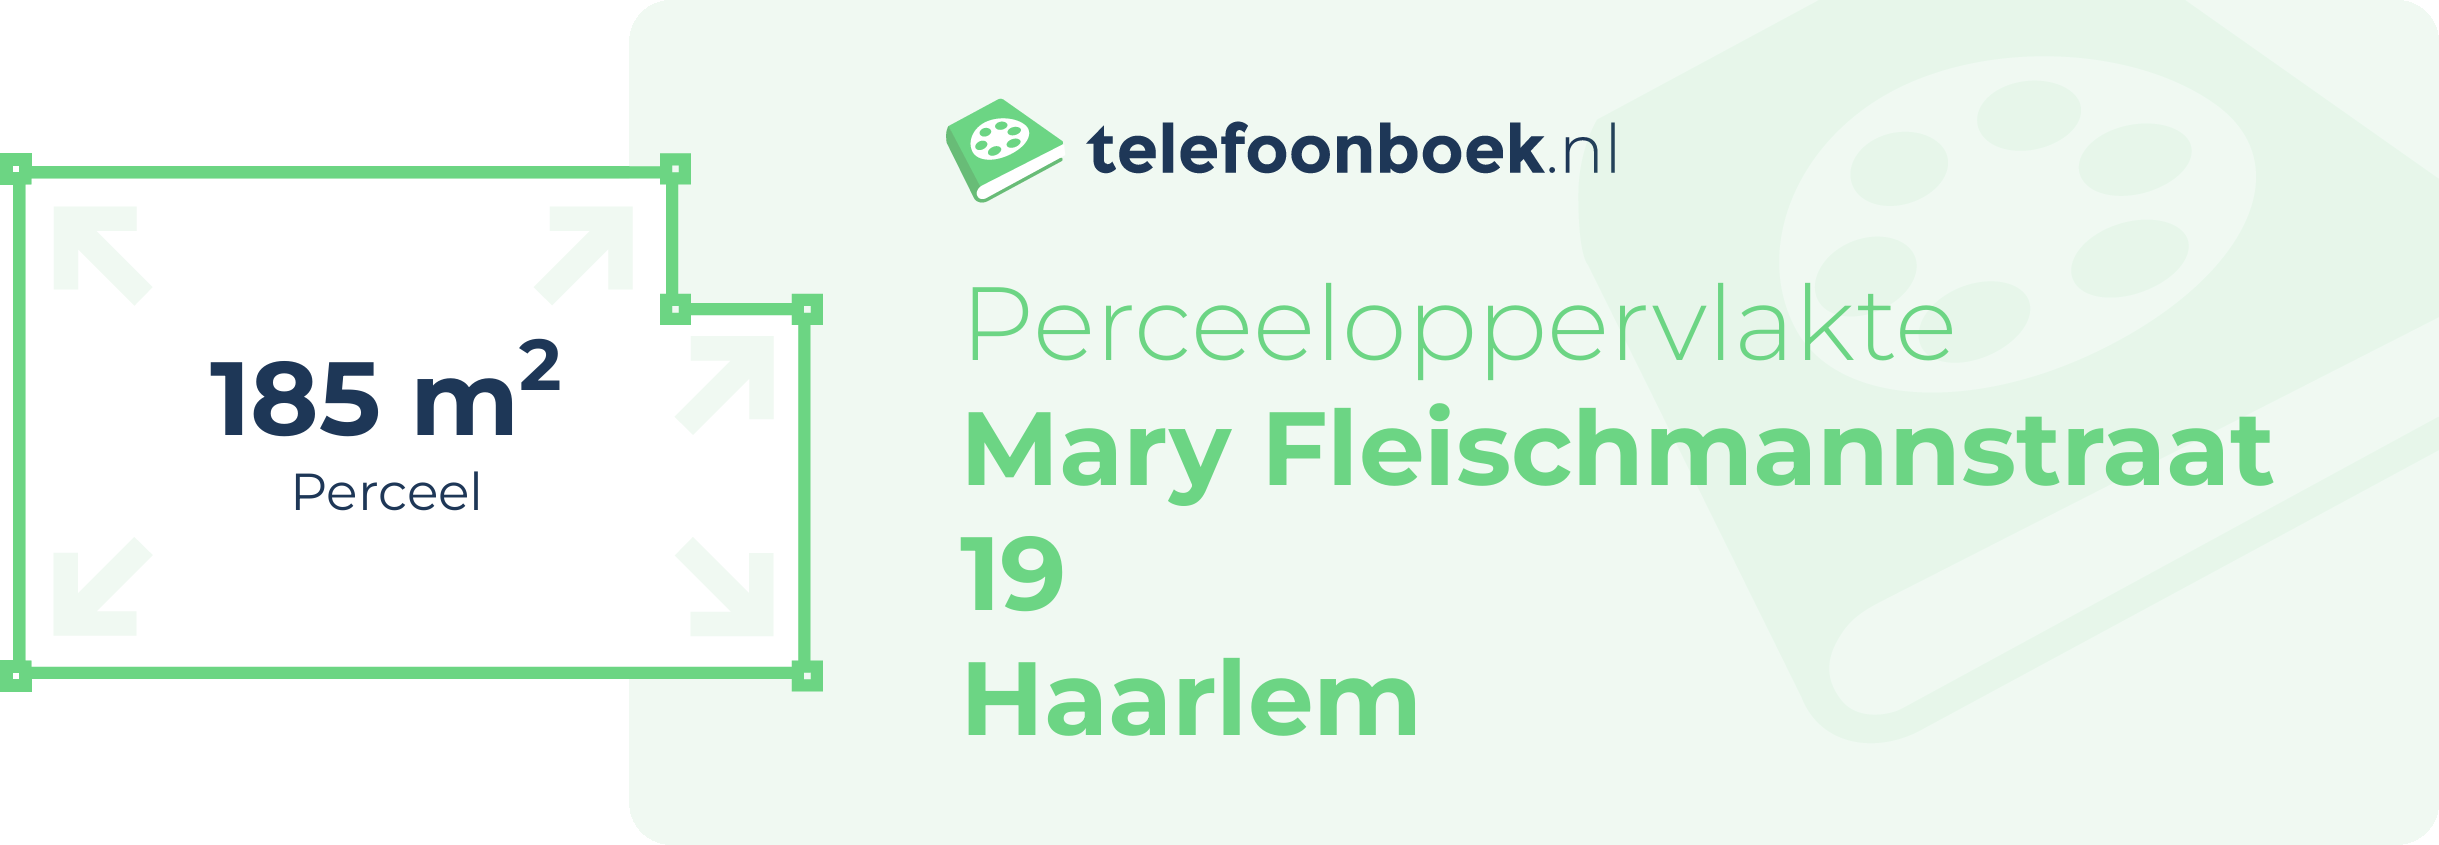 Perceeloppervlakte Mary Fleischmannstraat 19 Haarlem